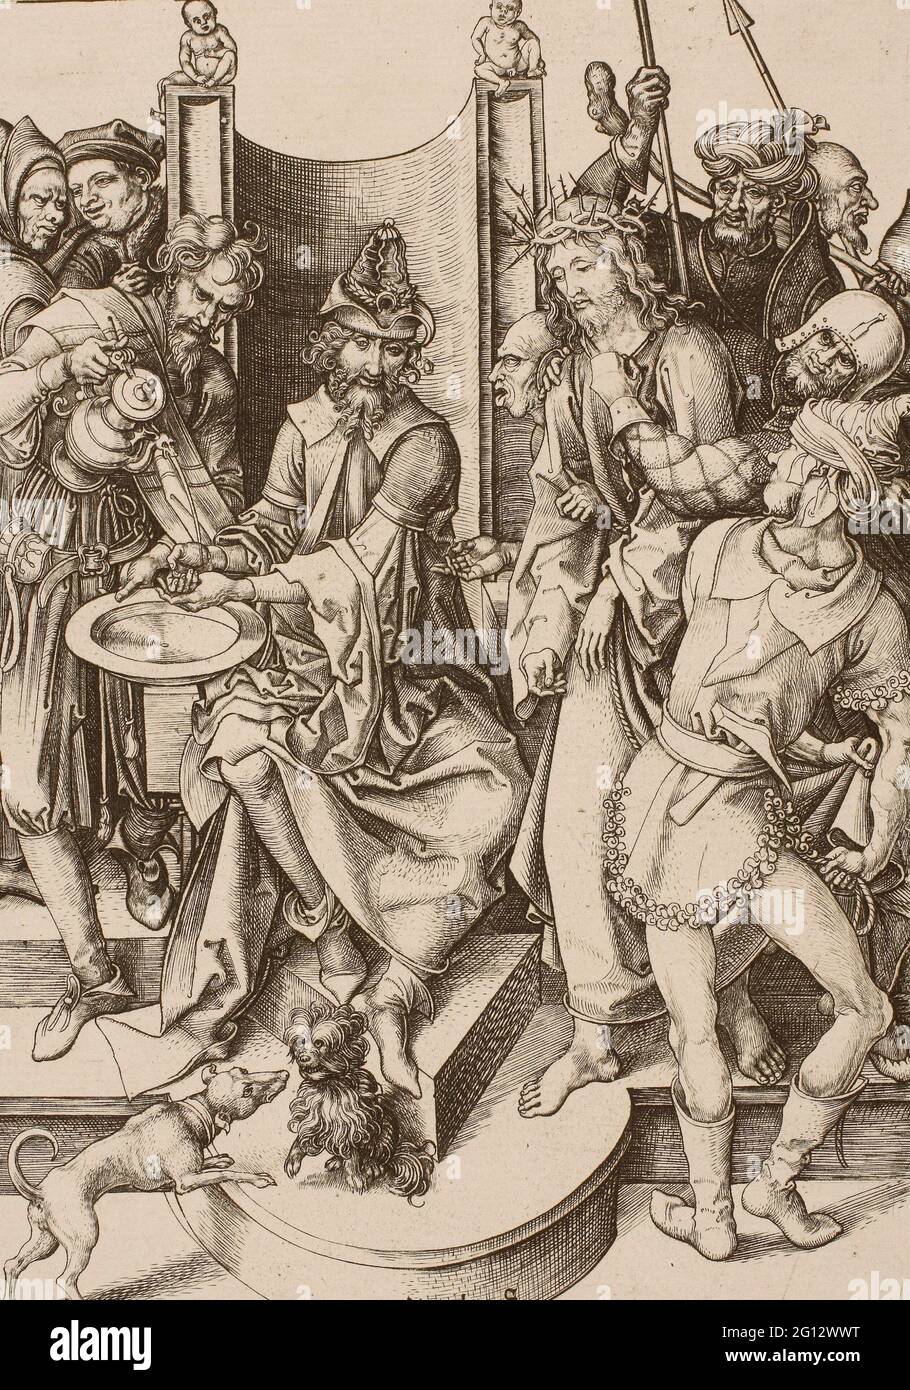 Martin Schongauer. Cristo prima di Pilato - c. 1475 - Martin Schongauer German, c. 1450-1491. Incisione su carta. 1470 - 1481. Germania. Foto Stock